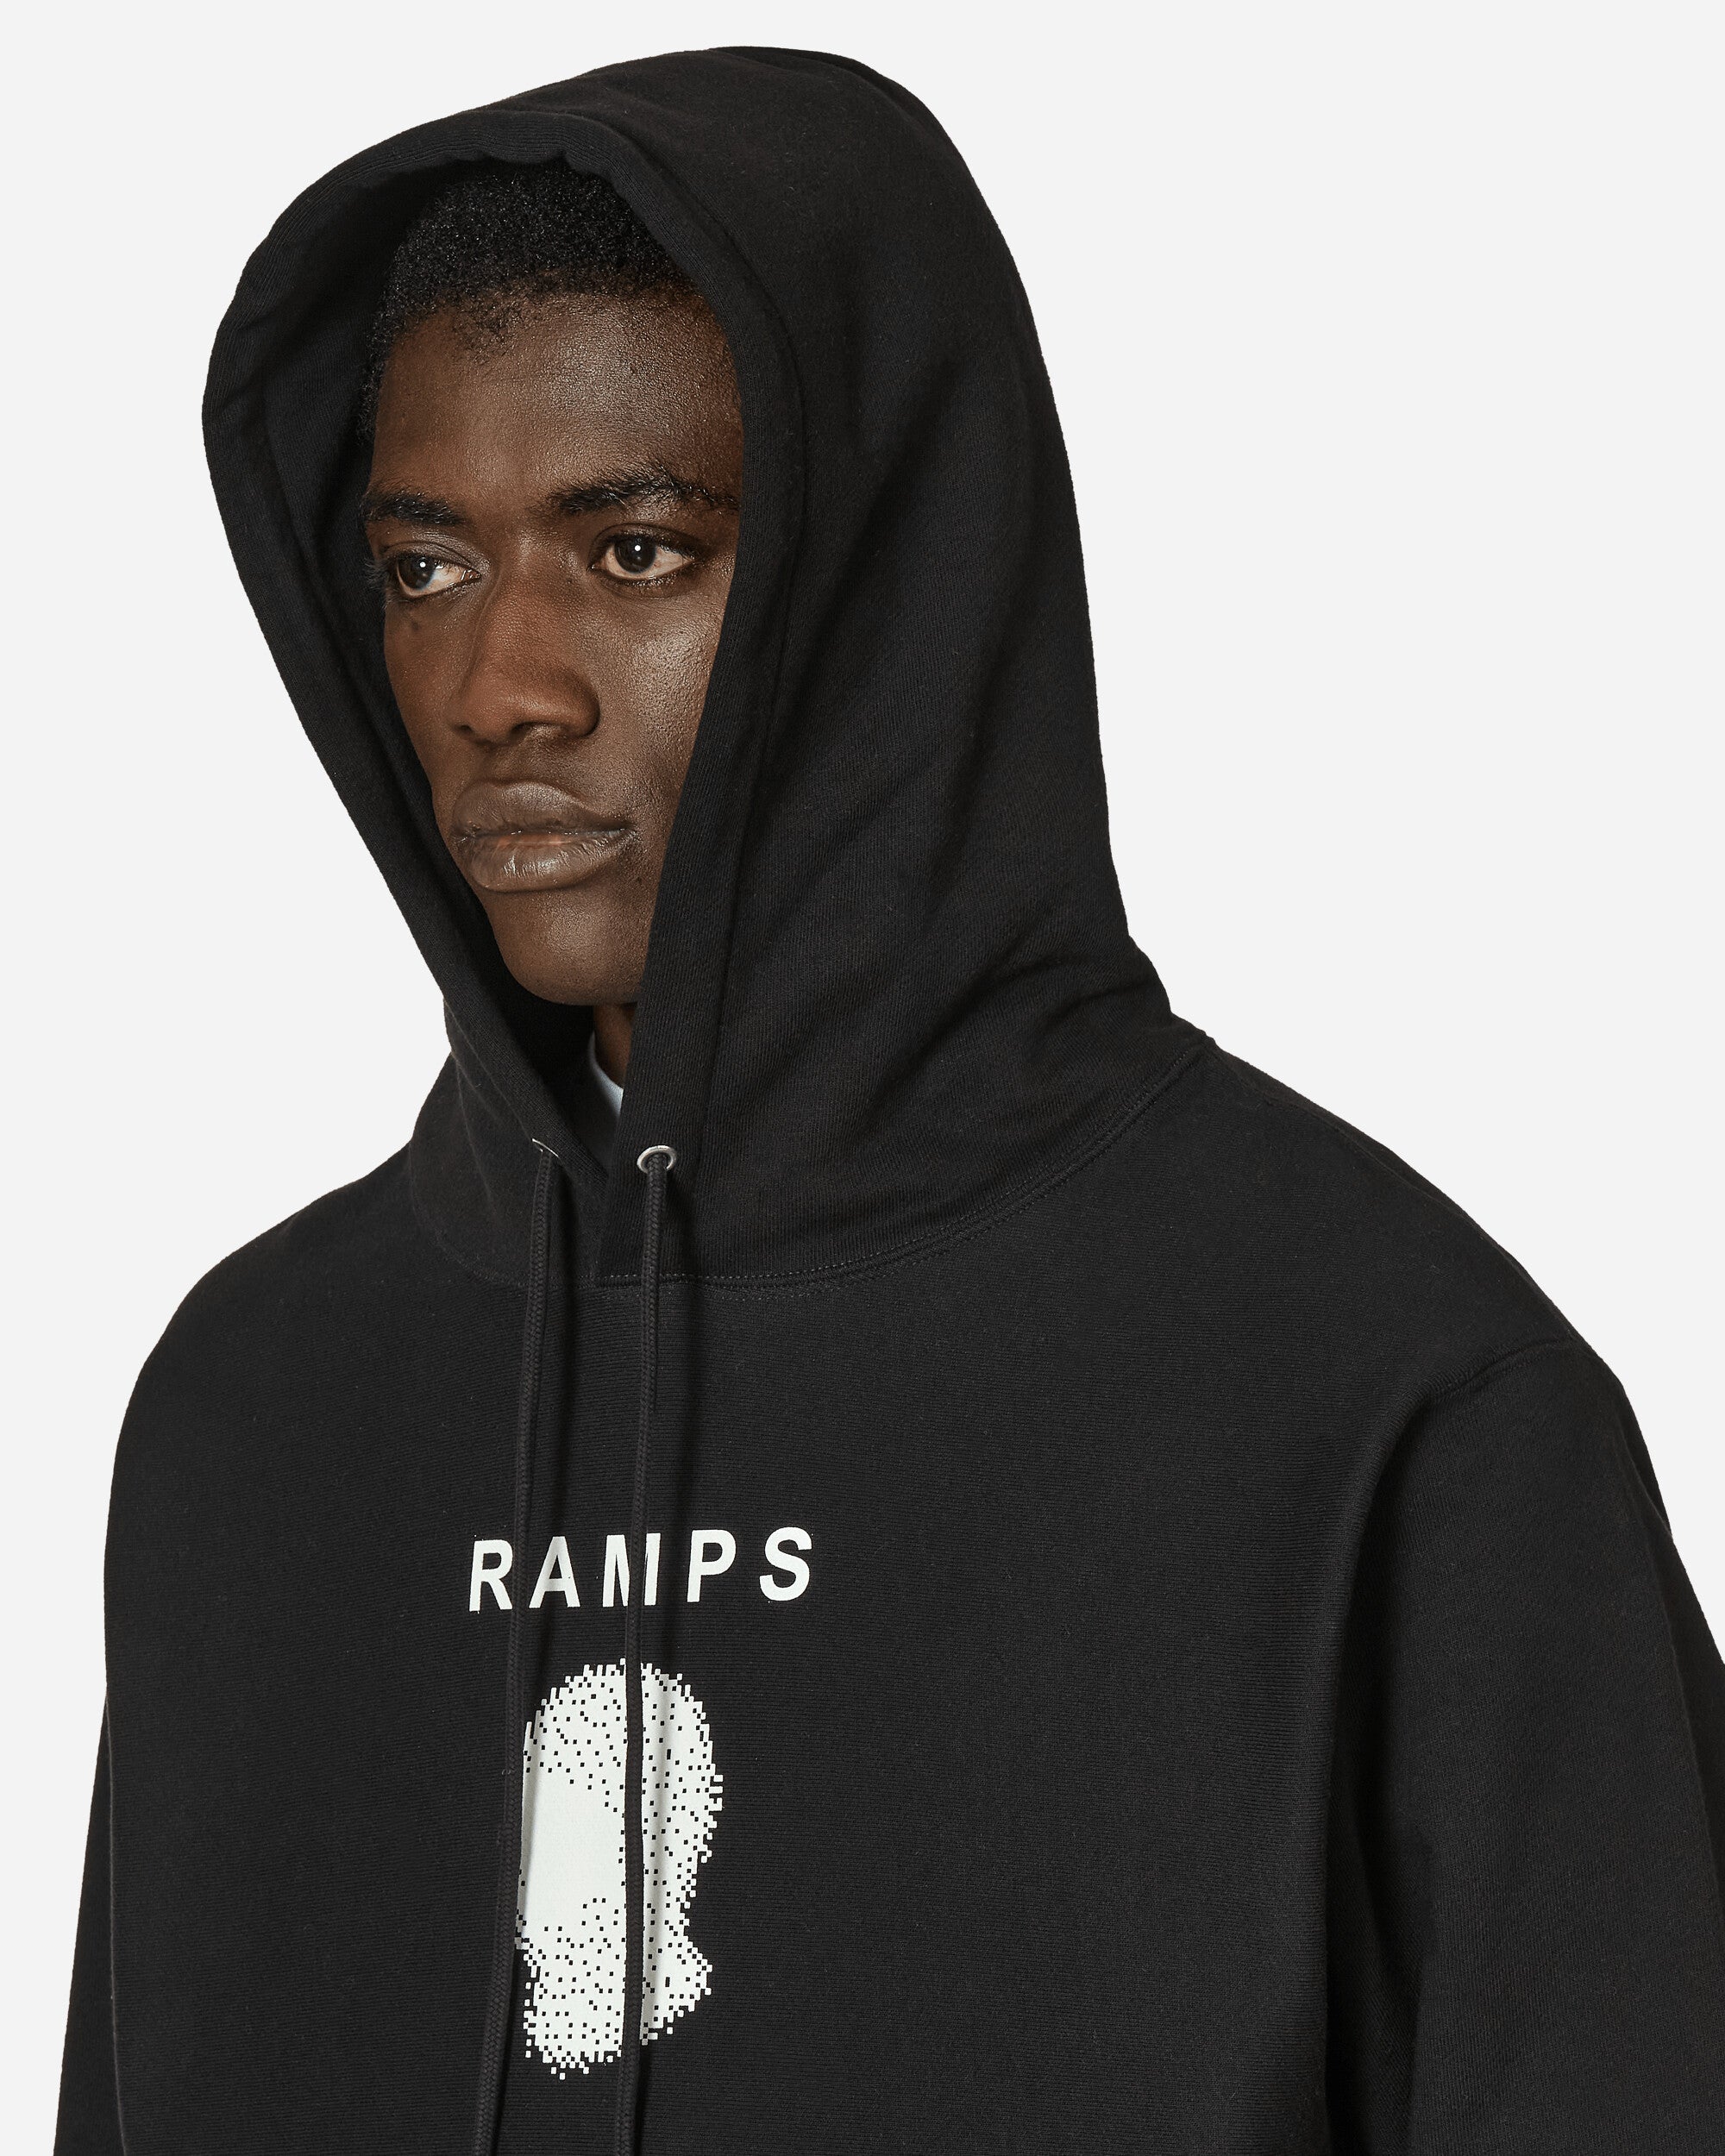 Ramps Bala Hoodie Black Sweatshirts Hoodies RAMPS005 BLACK